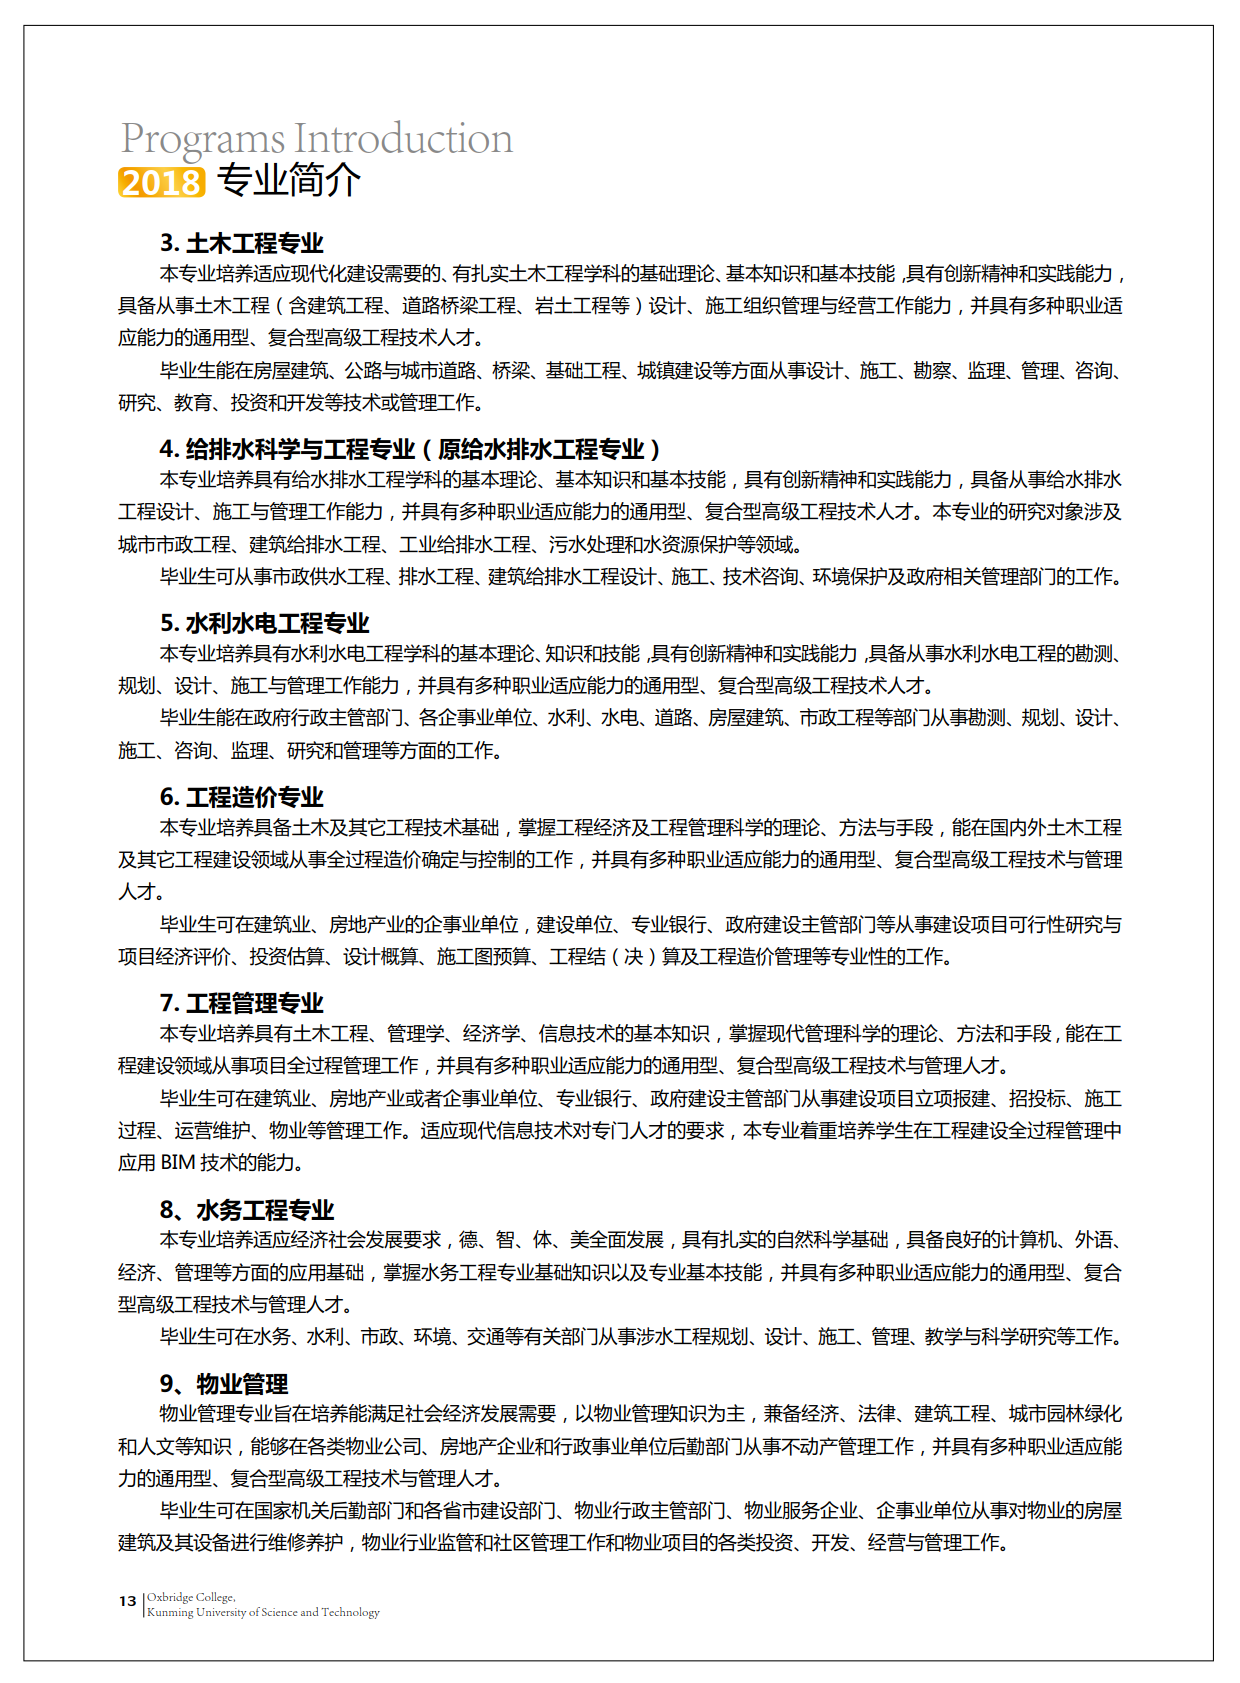 津桥学校招生手册-0611-加外框单页_16